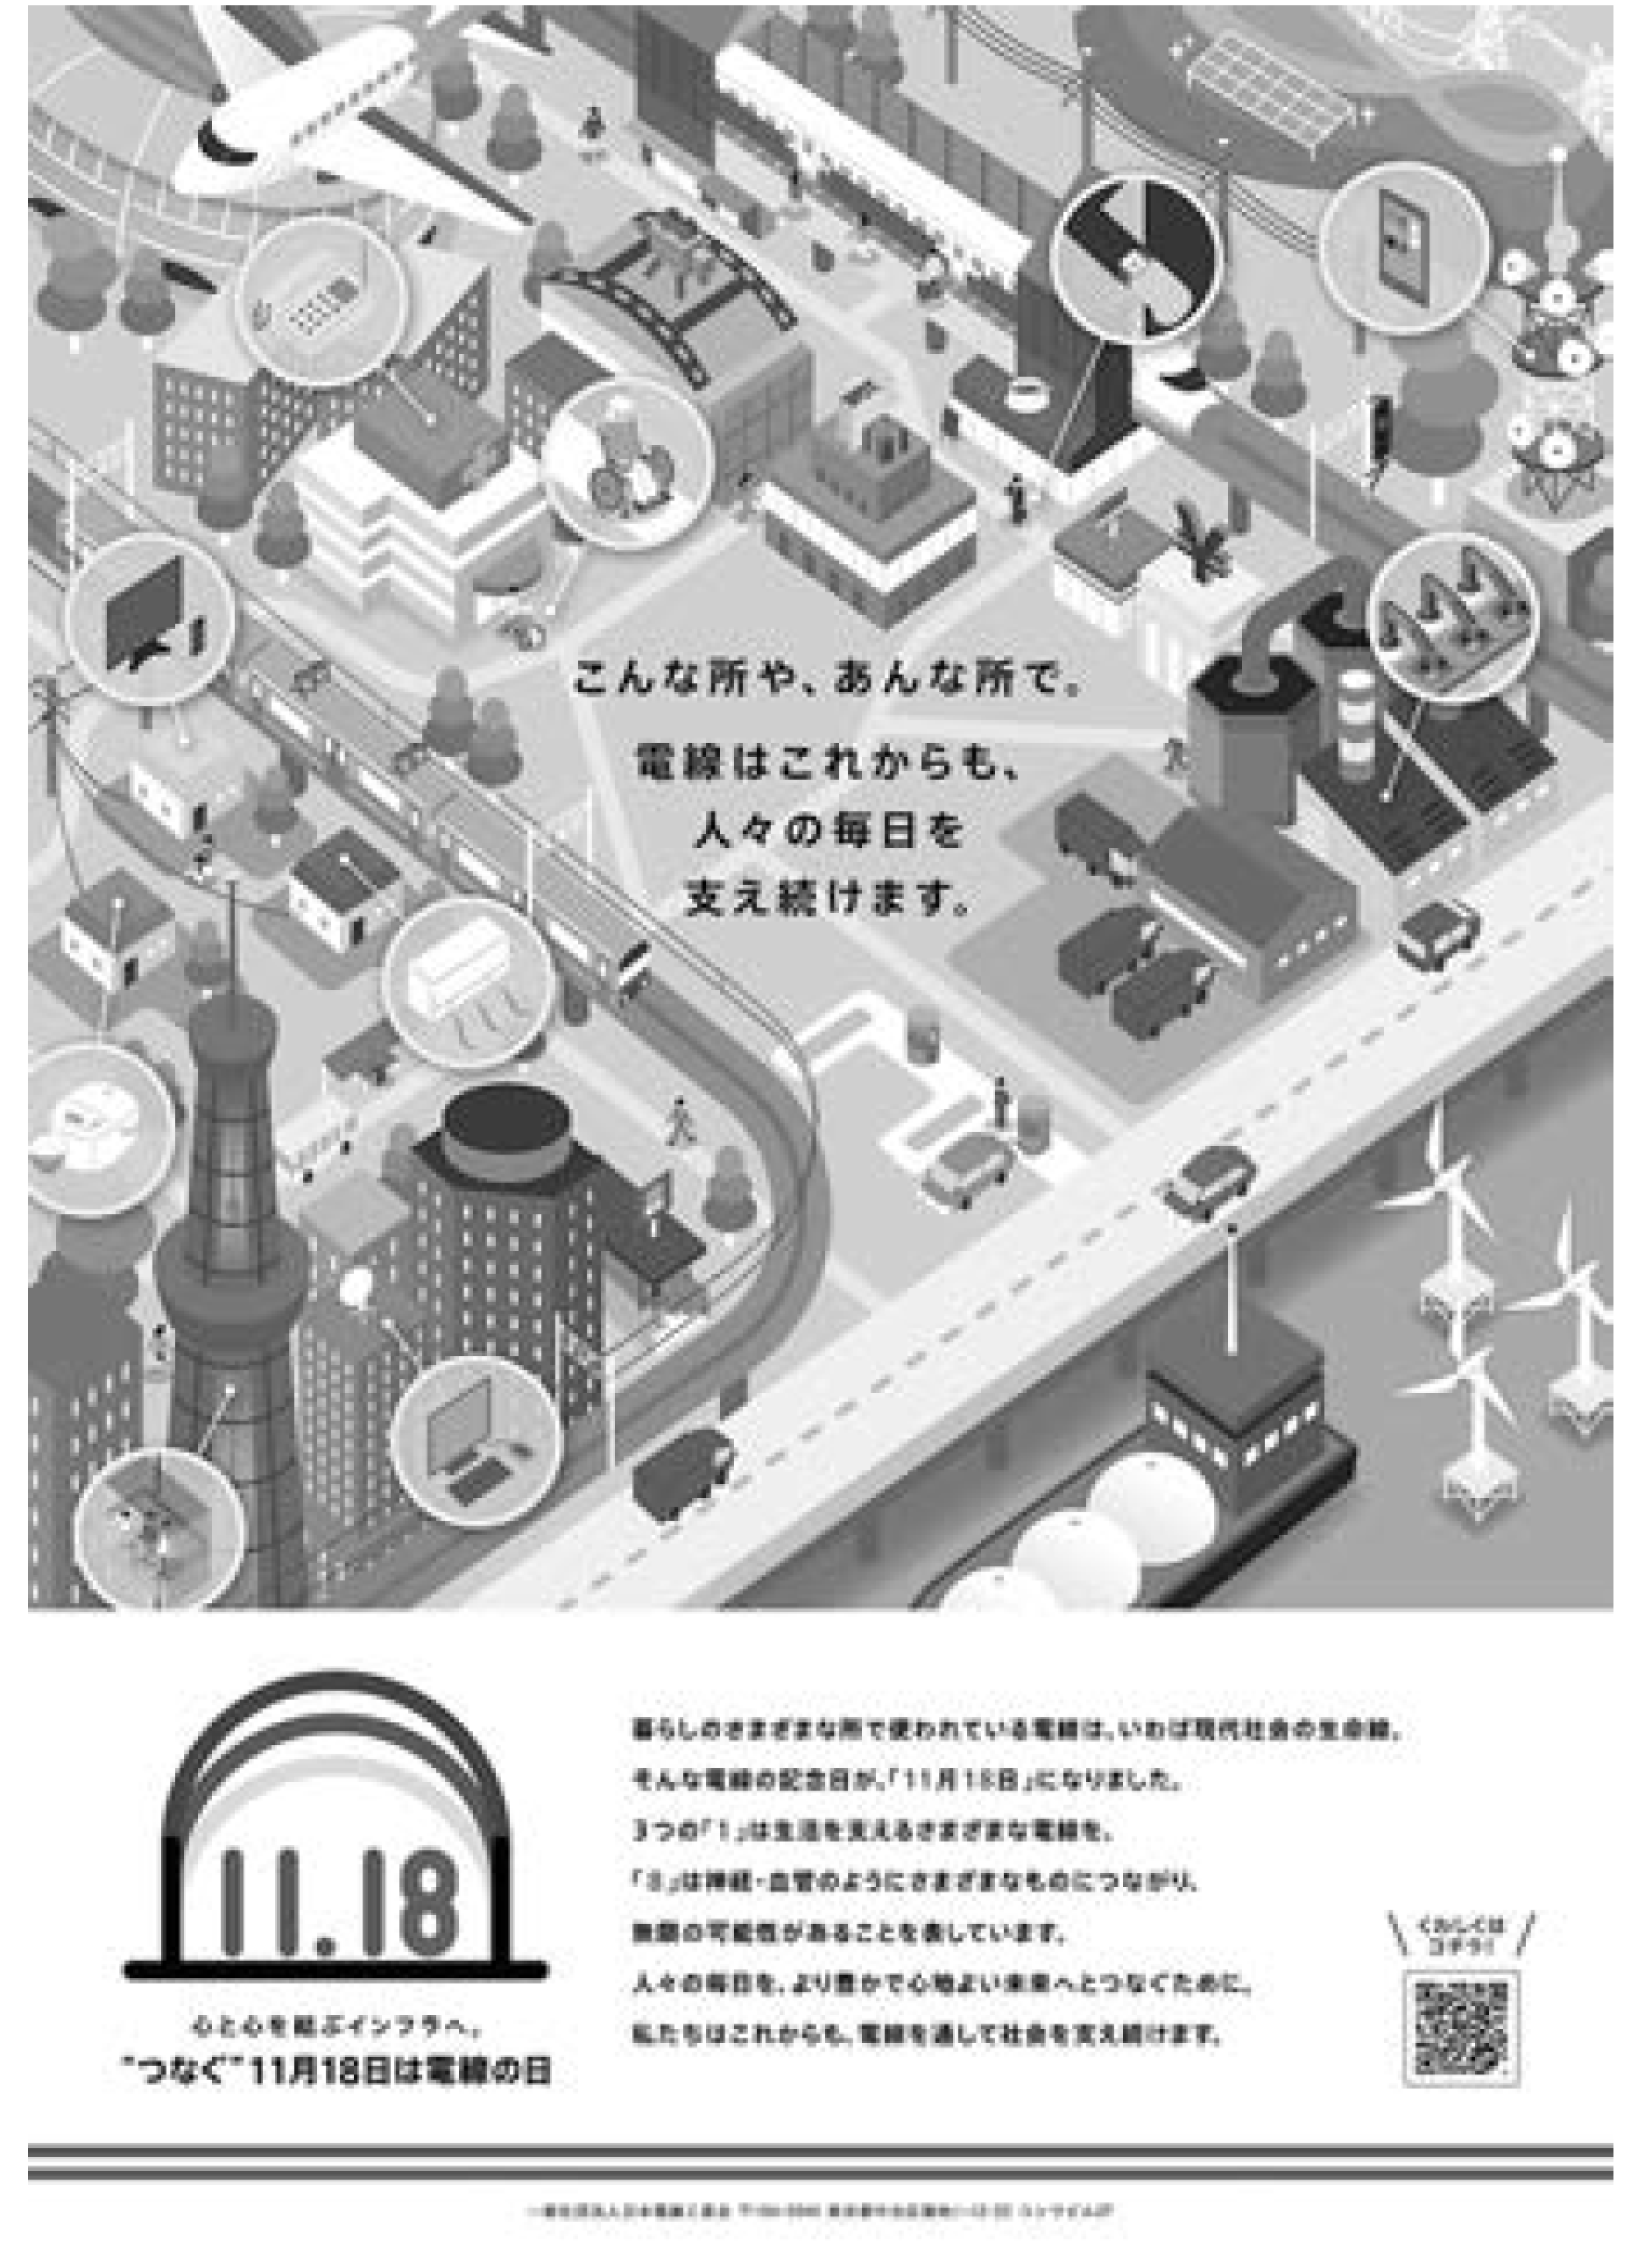 【日本電線工業会】２０１９年版コンセプトポスターを作成の画像